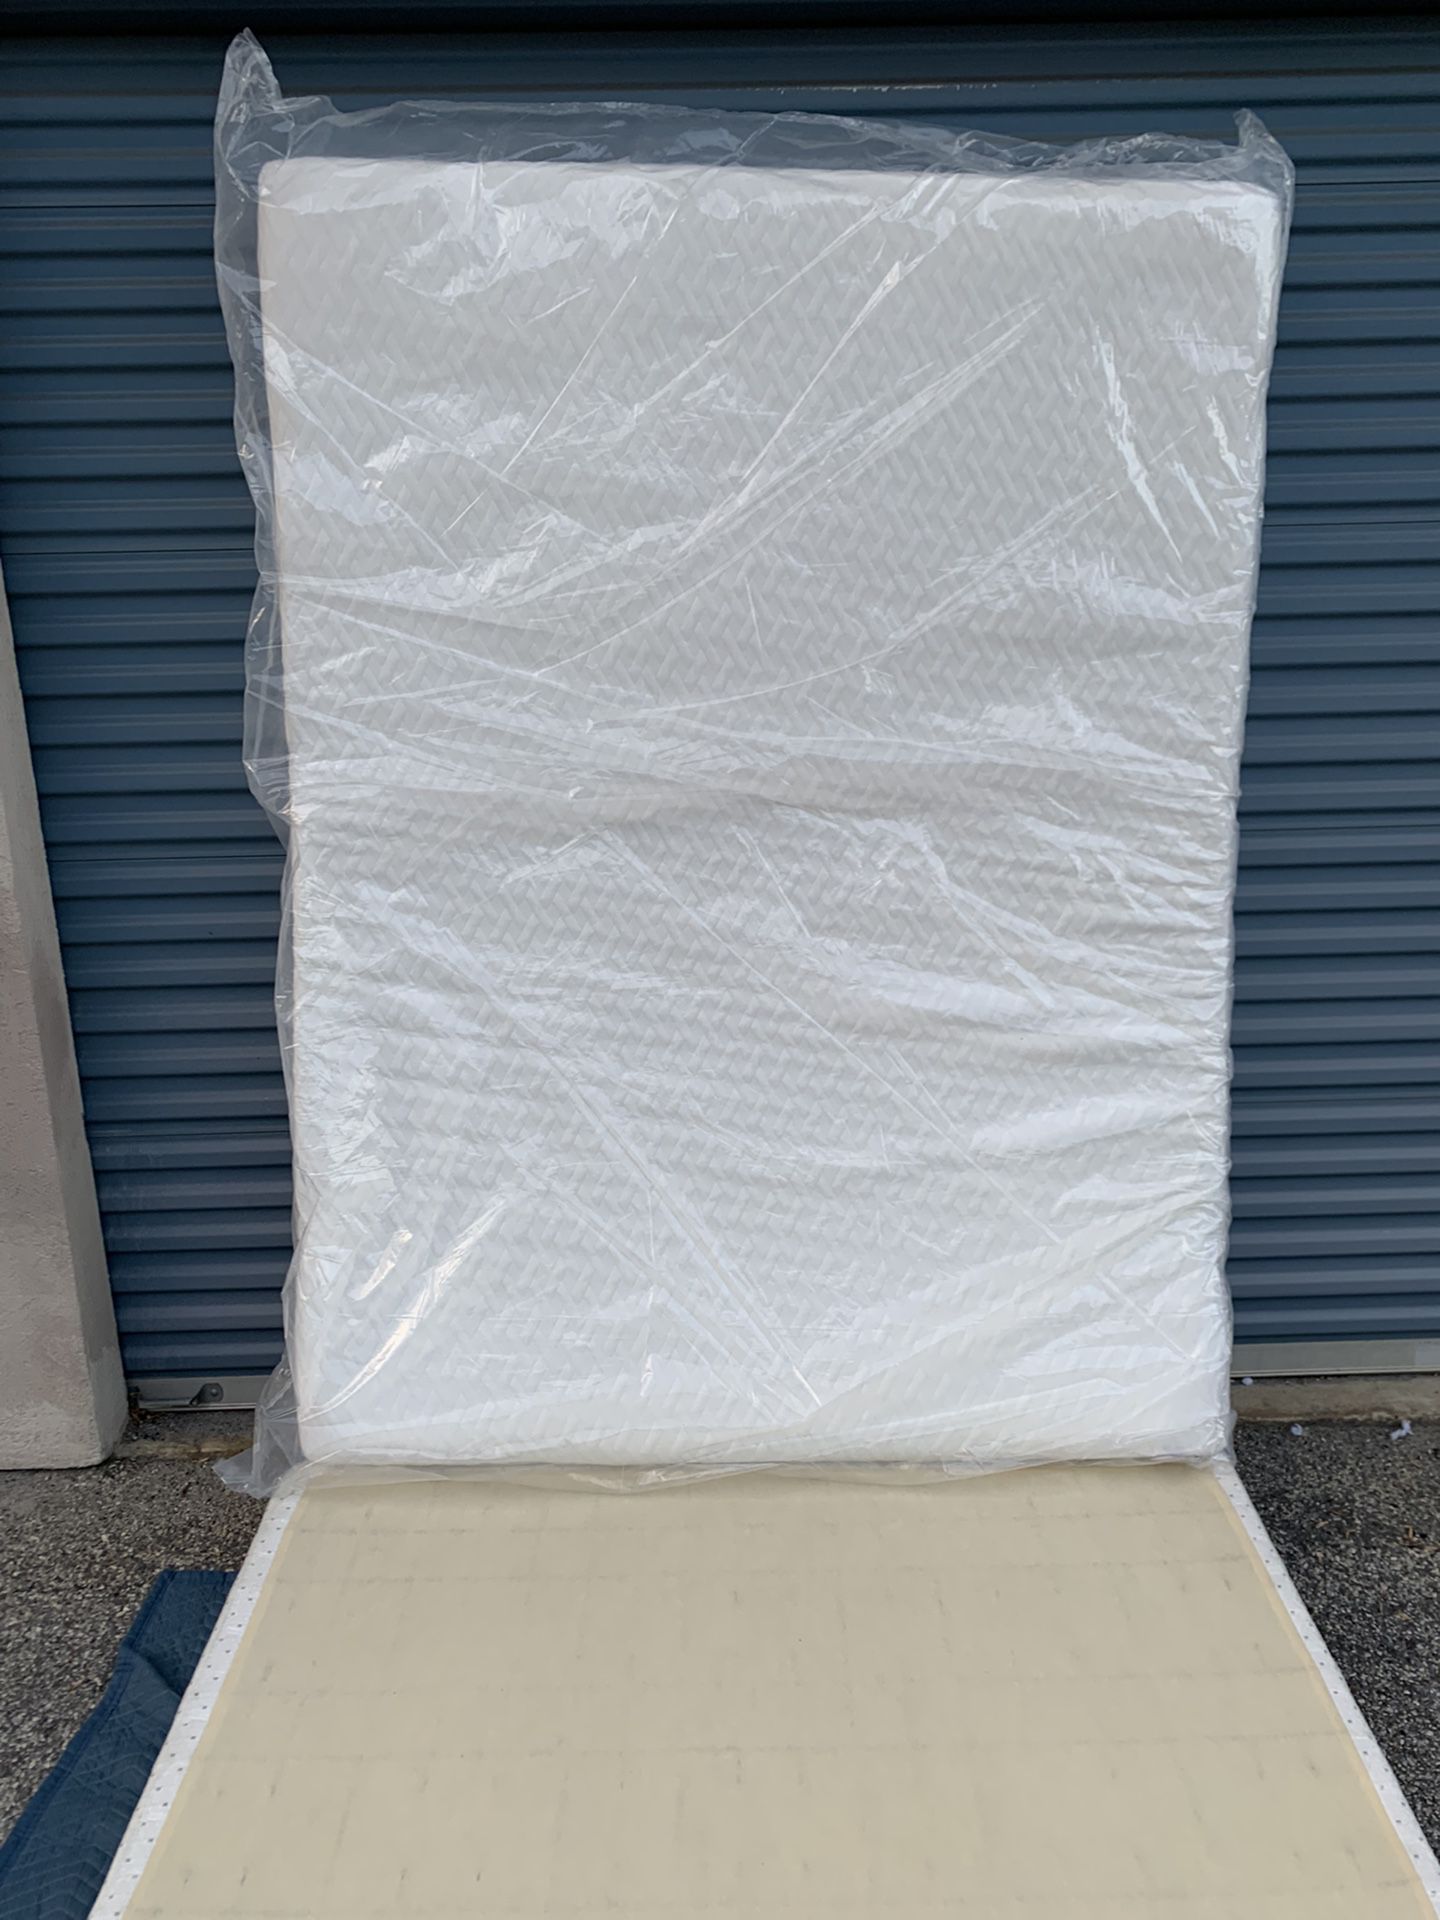 Memory foam queen mattress 80”x58”